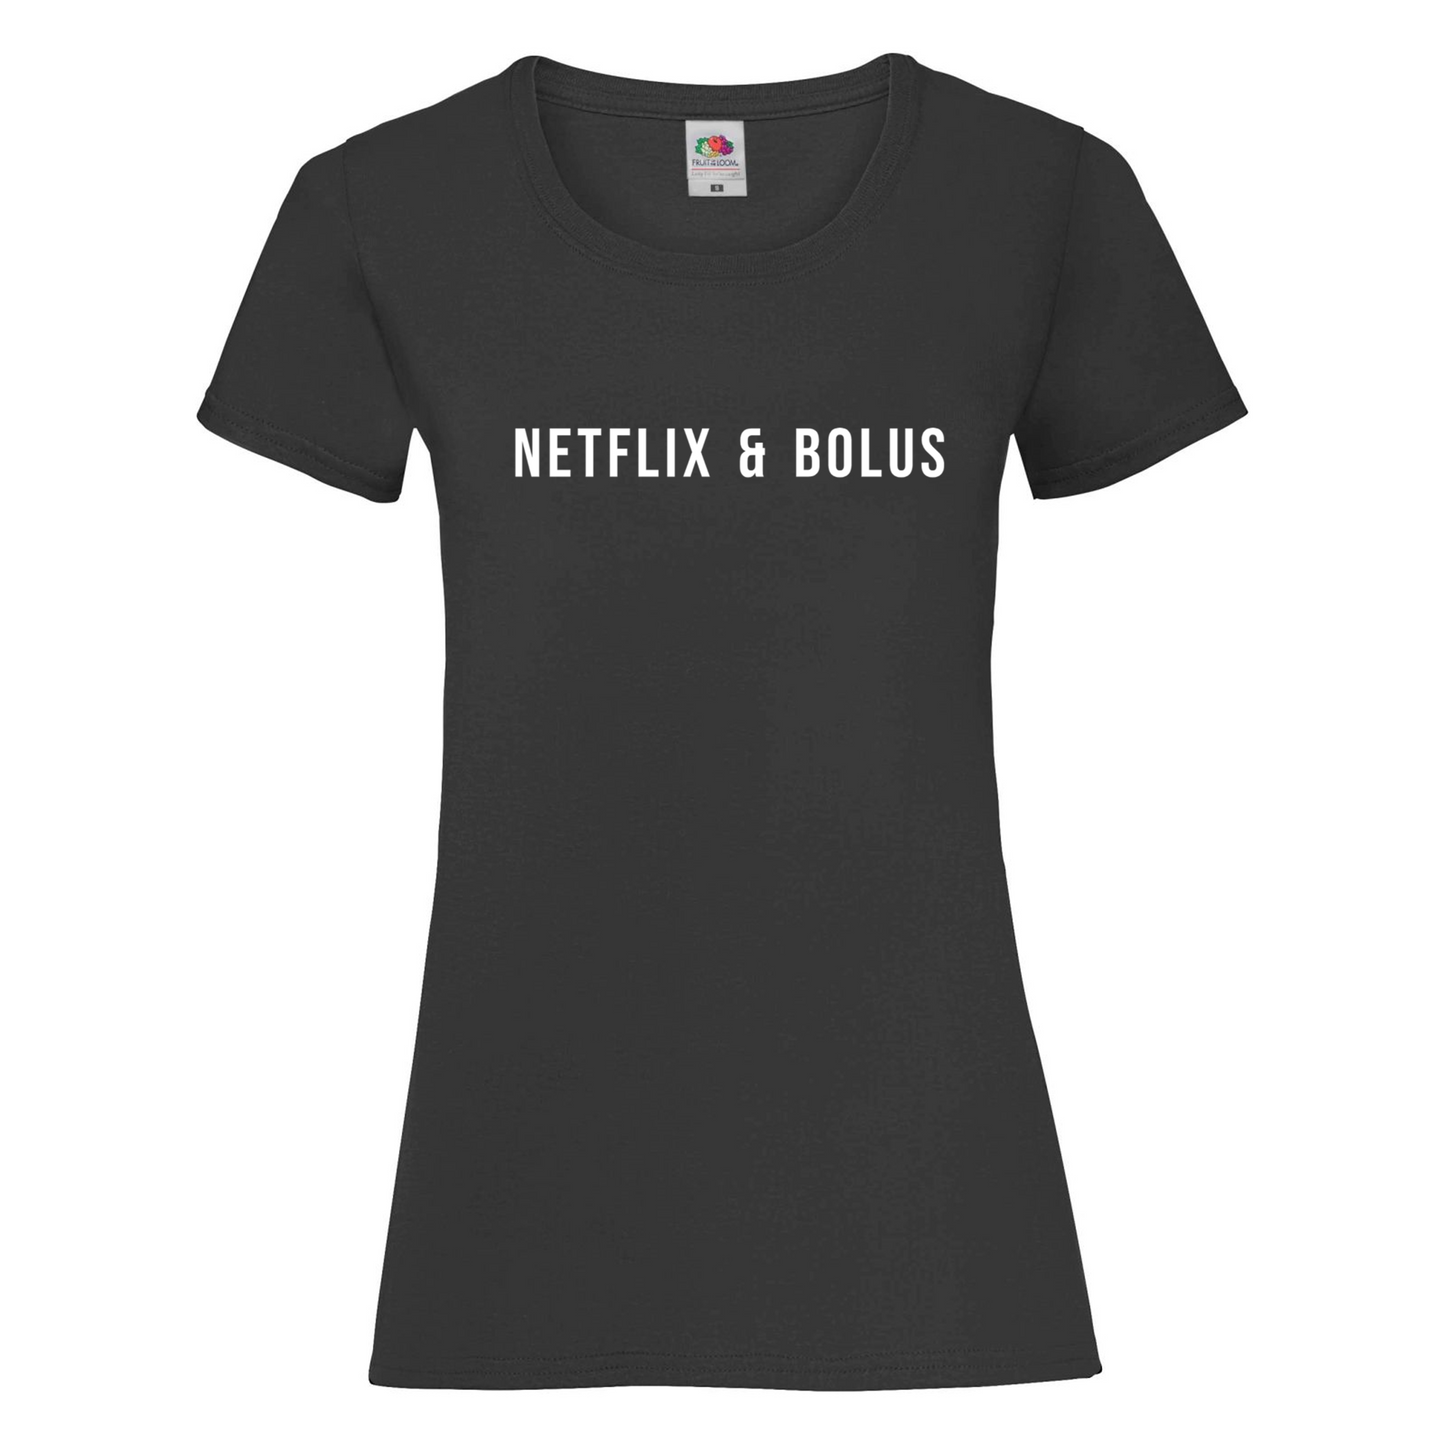 Netflix & Bolus Women's T Shirt